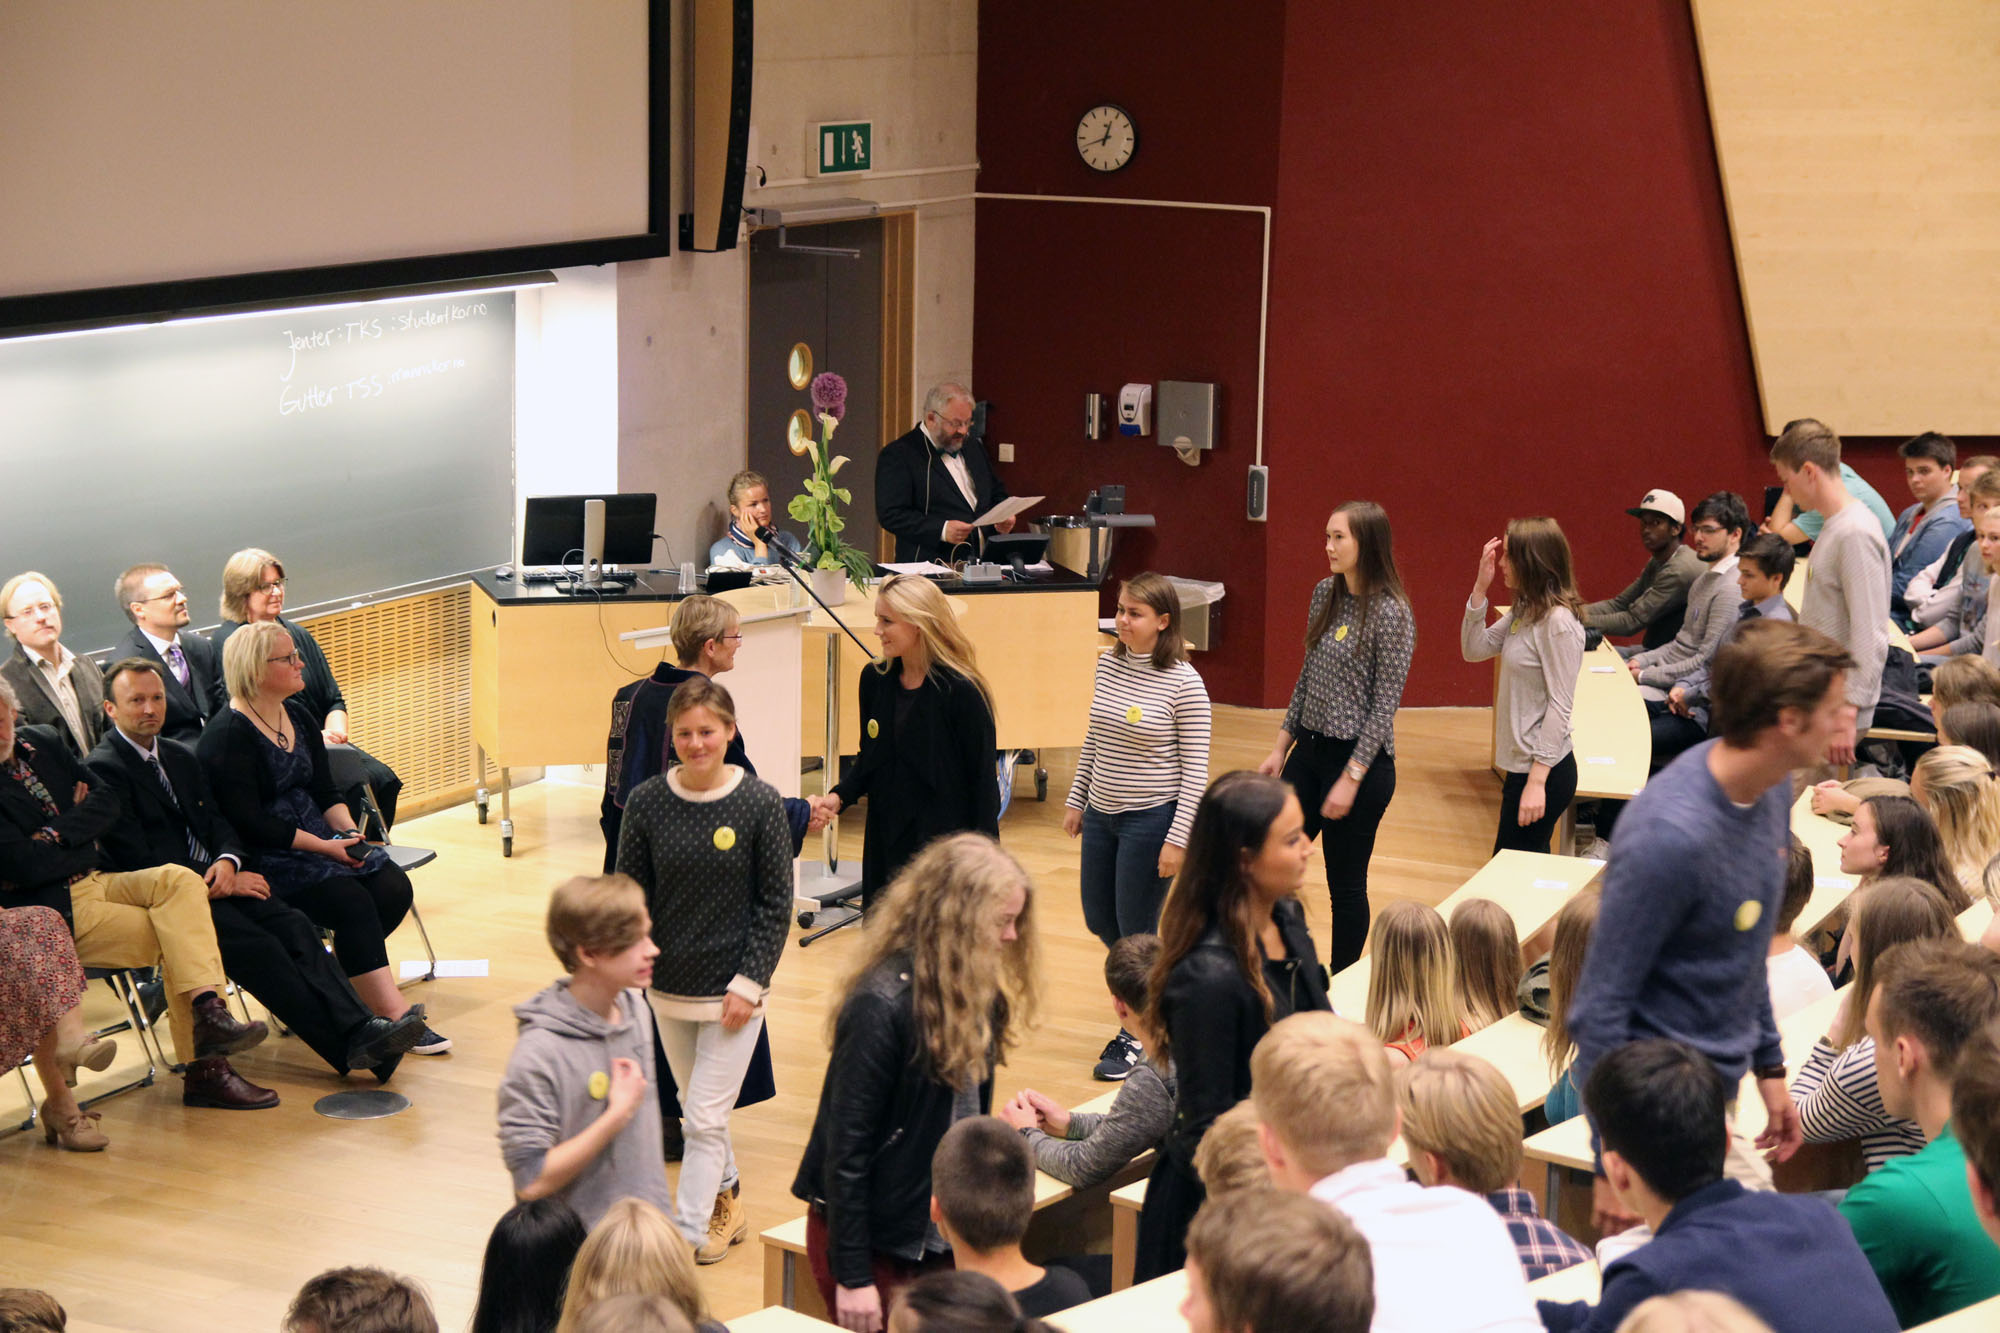 Immatrikuleringen er en høytidelig seremoni hvor alle studentene blir ropt opp ved navn, og håndhilser på en representant for fakultetsledelsen. Foto: Pernille Feilberg / NTNU